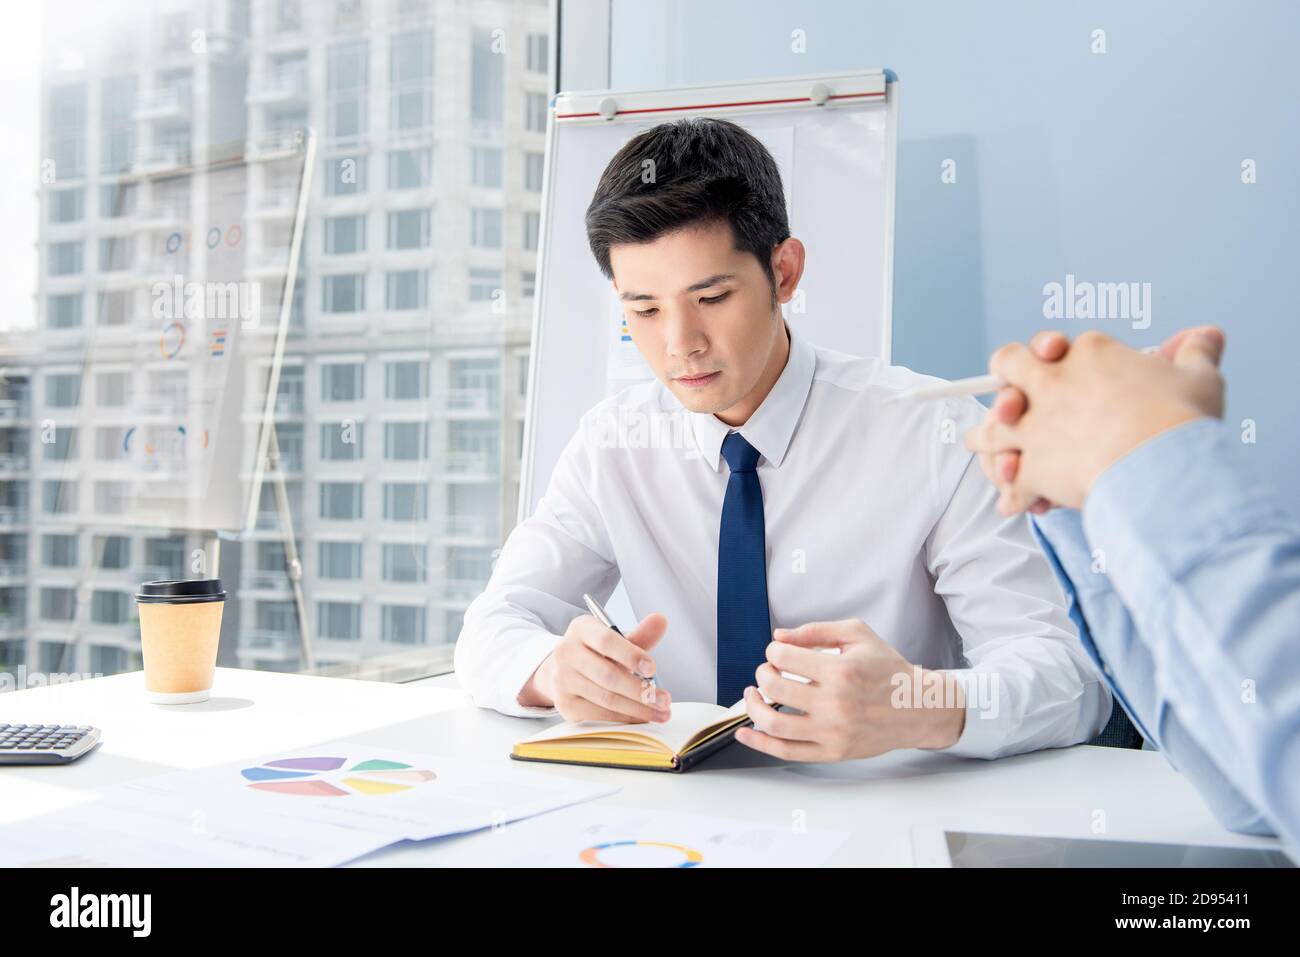 Junge neue asiatische männliche Mitarbeiter, die bei der Sitzung zur Kenntnis genommen werden Im City Office Stockfoto